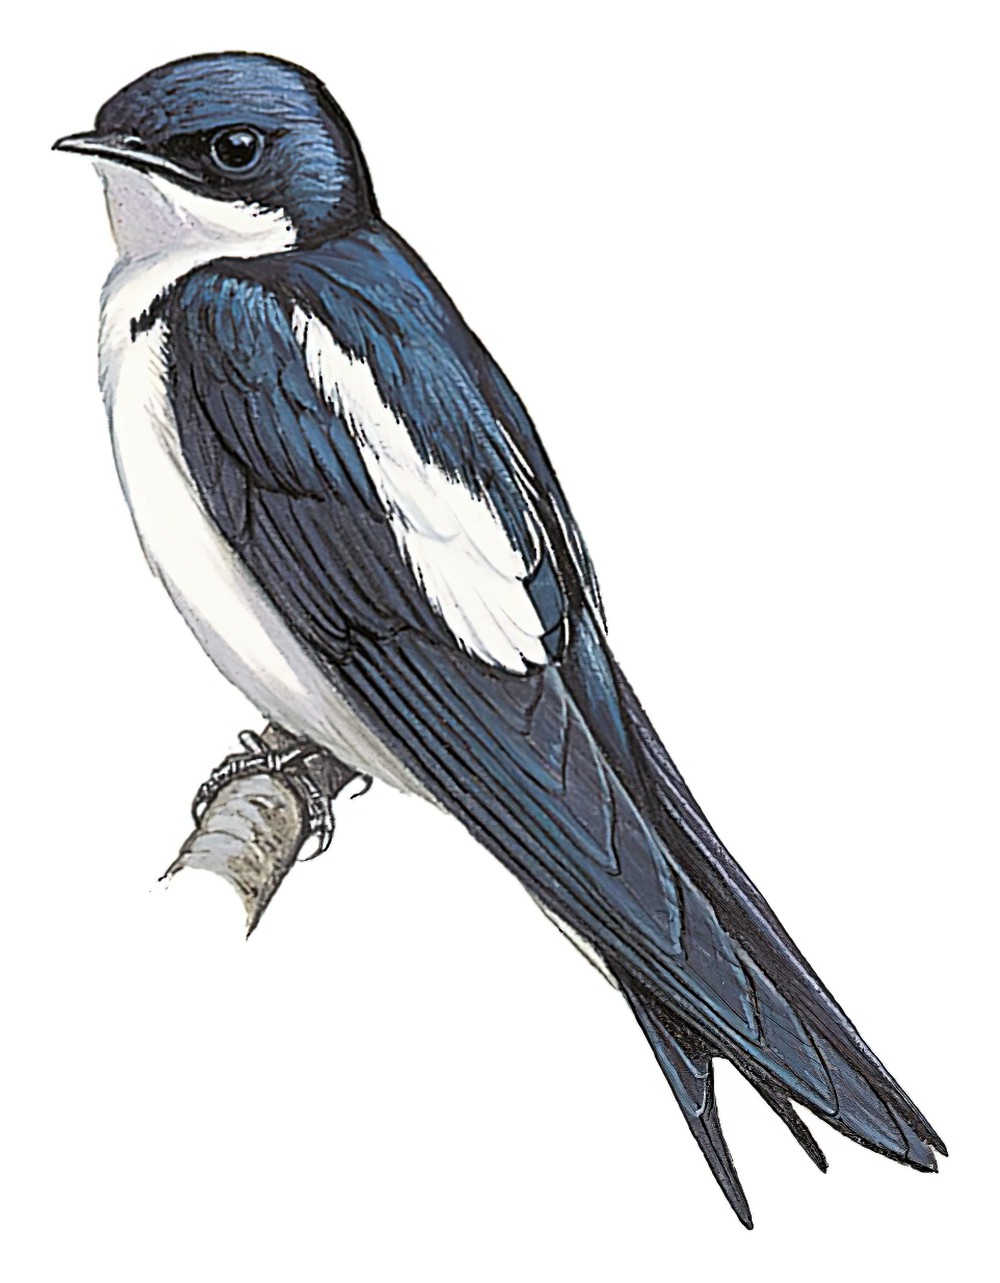 Pied-winged Swallow / Hirundo leucosoma